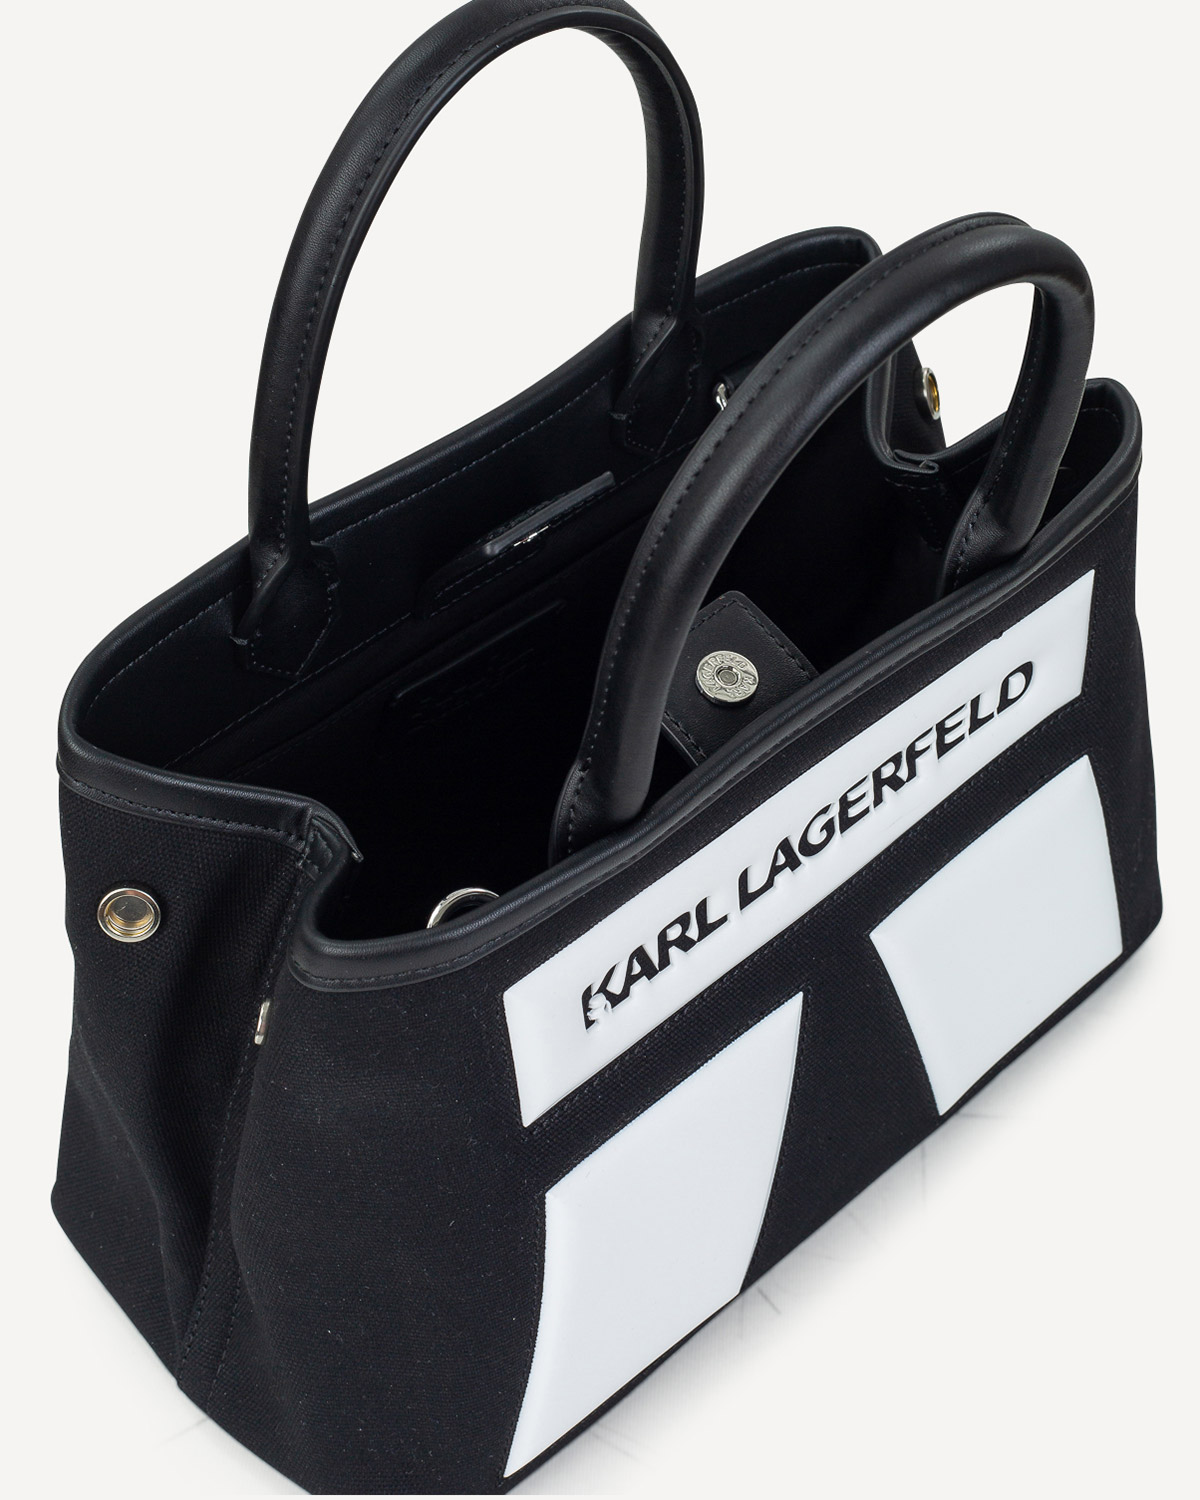 Γυναίκα - Shopping - Karl Lagerfeld Μαύρο